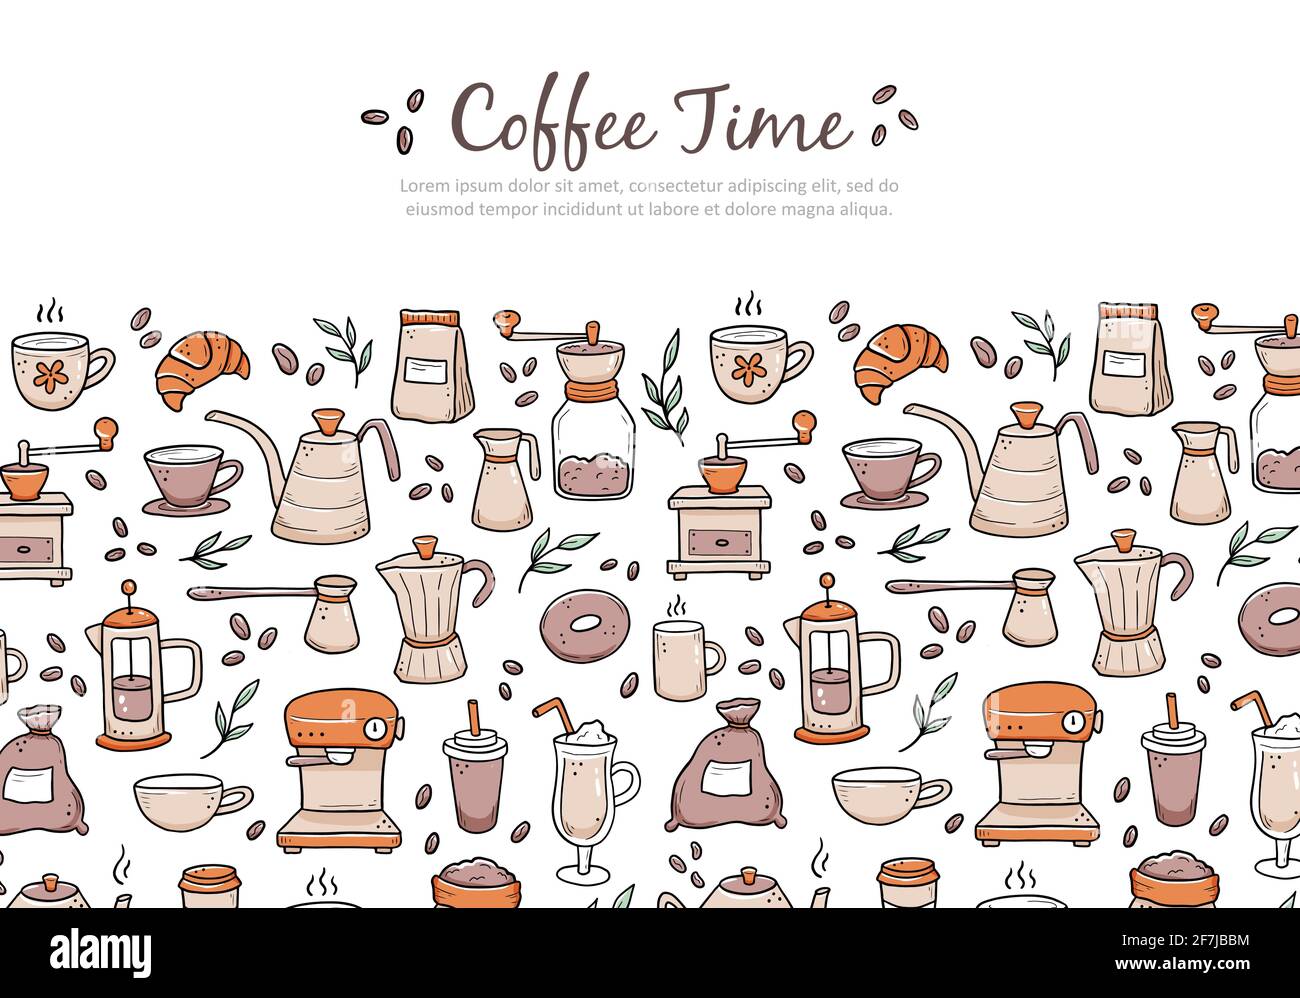 Máy pha cà phê: Với các máy pha cà phê tối tân và hiện đại, chúng tôi có thể pha ra cho bạn những tách cà phê tuyệt vời, hương vị đậm đà và thơm ngon. Hãy xem ảnh để tìm hiểu thêm về các công nghệ pha cà phê tuyệt vời này.